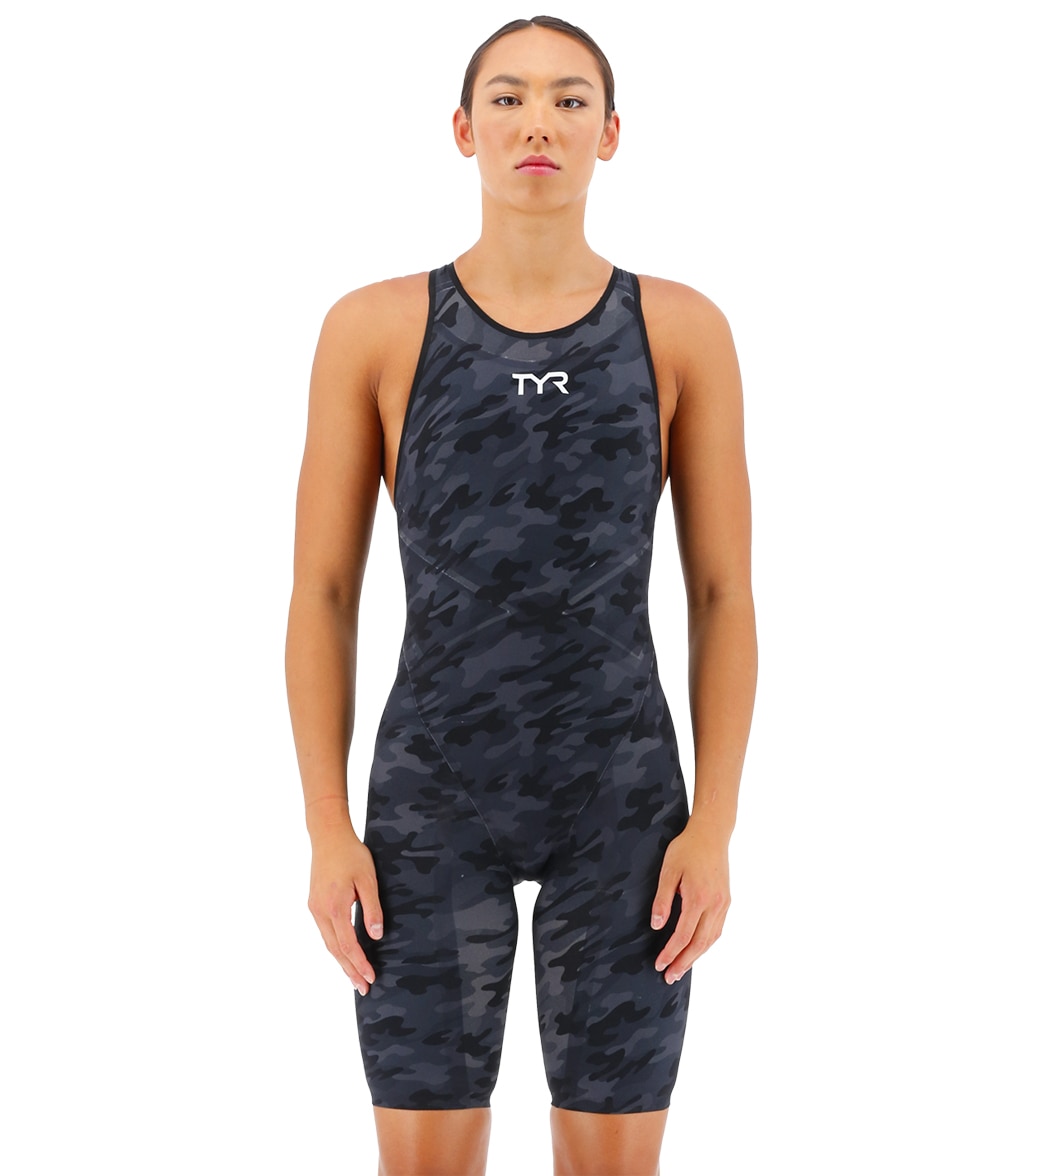 TYR Women's Venzo Camo Open Back Tech Suit Swimsuit - Black 22 - Swimoutlet.com